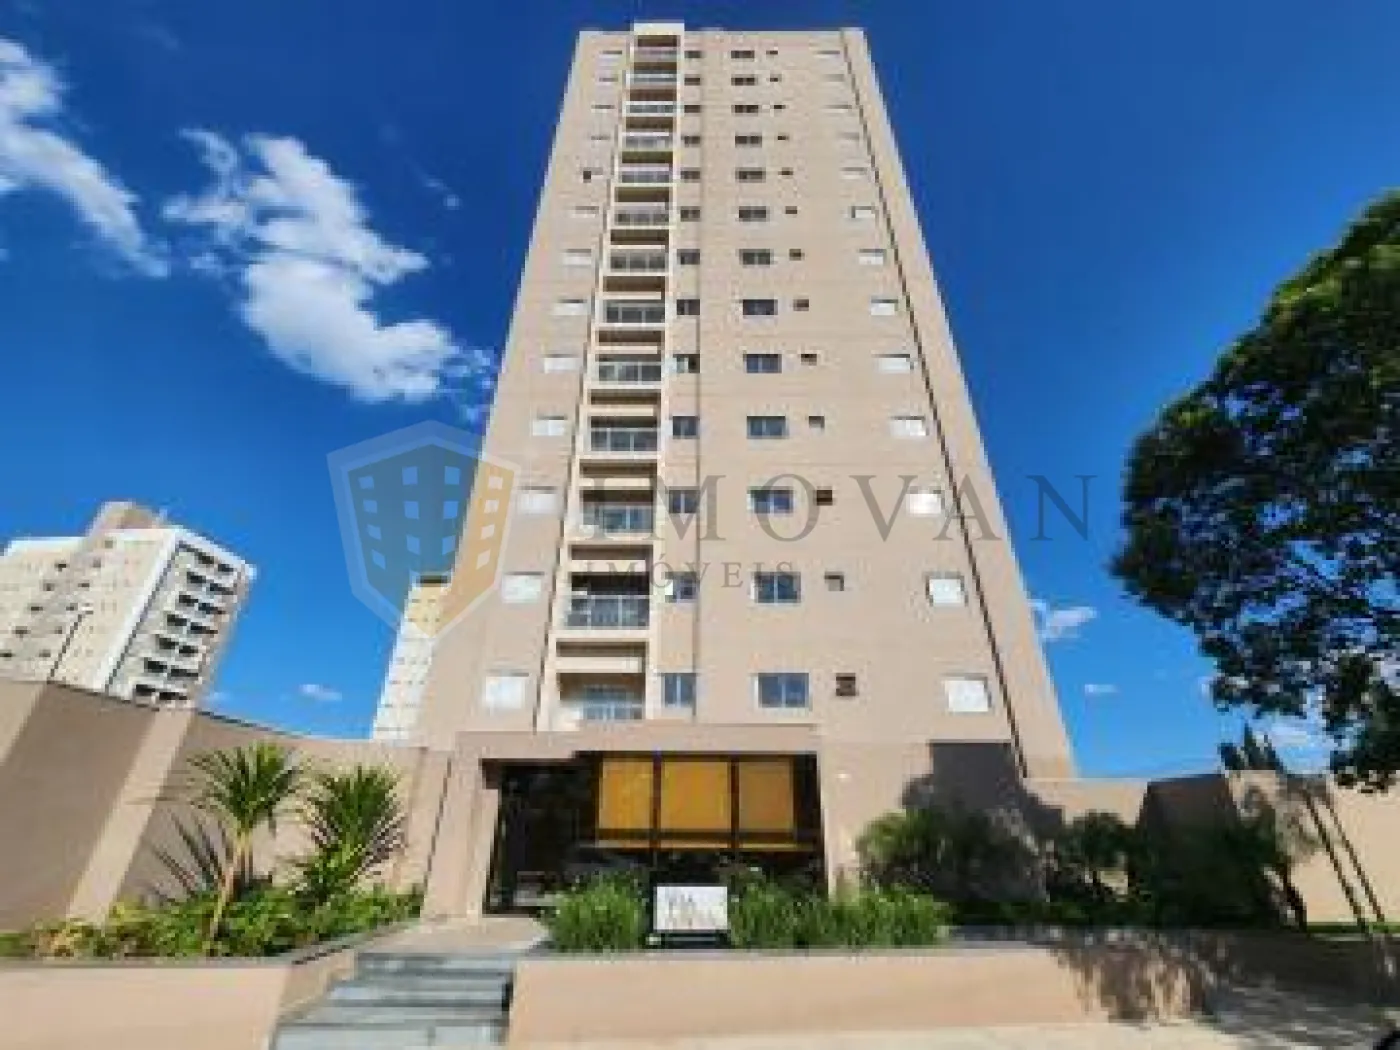 Comprar Apartamento / Kitchnet em Ribeirão Preto R$ 270.000,00 - Foto 2